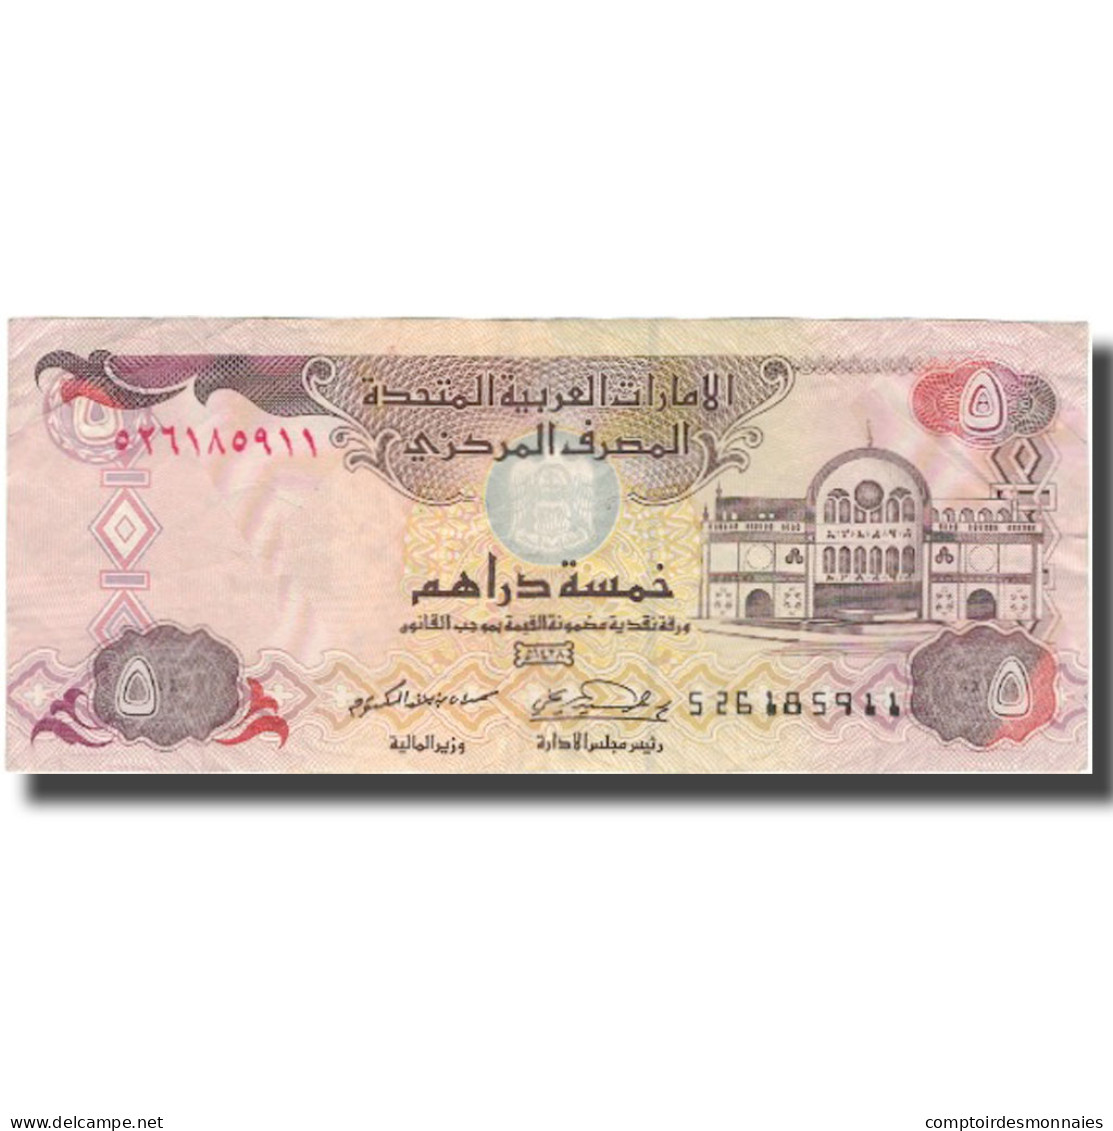 Billet, United Arab Emirates, 5 Dirhams, Undated (1982), KM:7a, TTB - Ver. Arab. Emirate